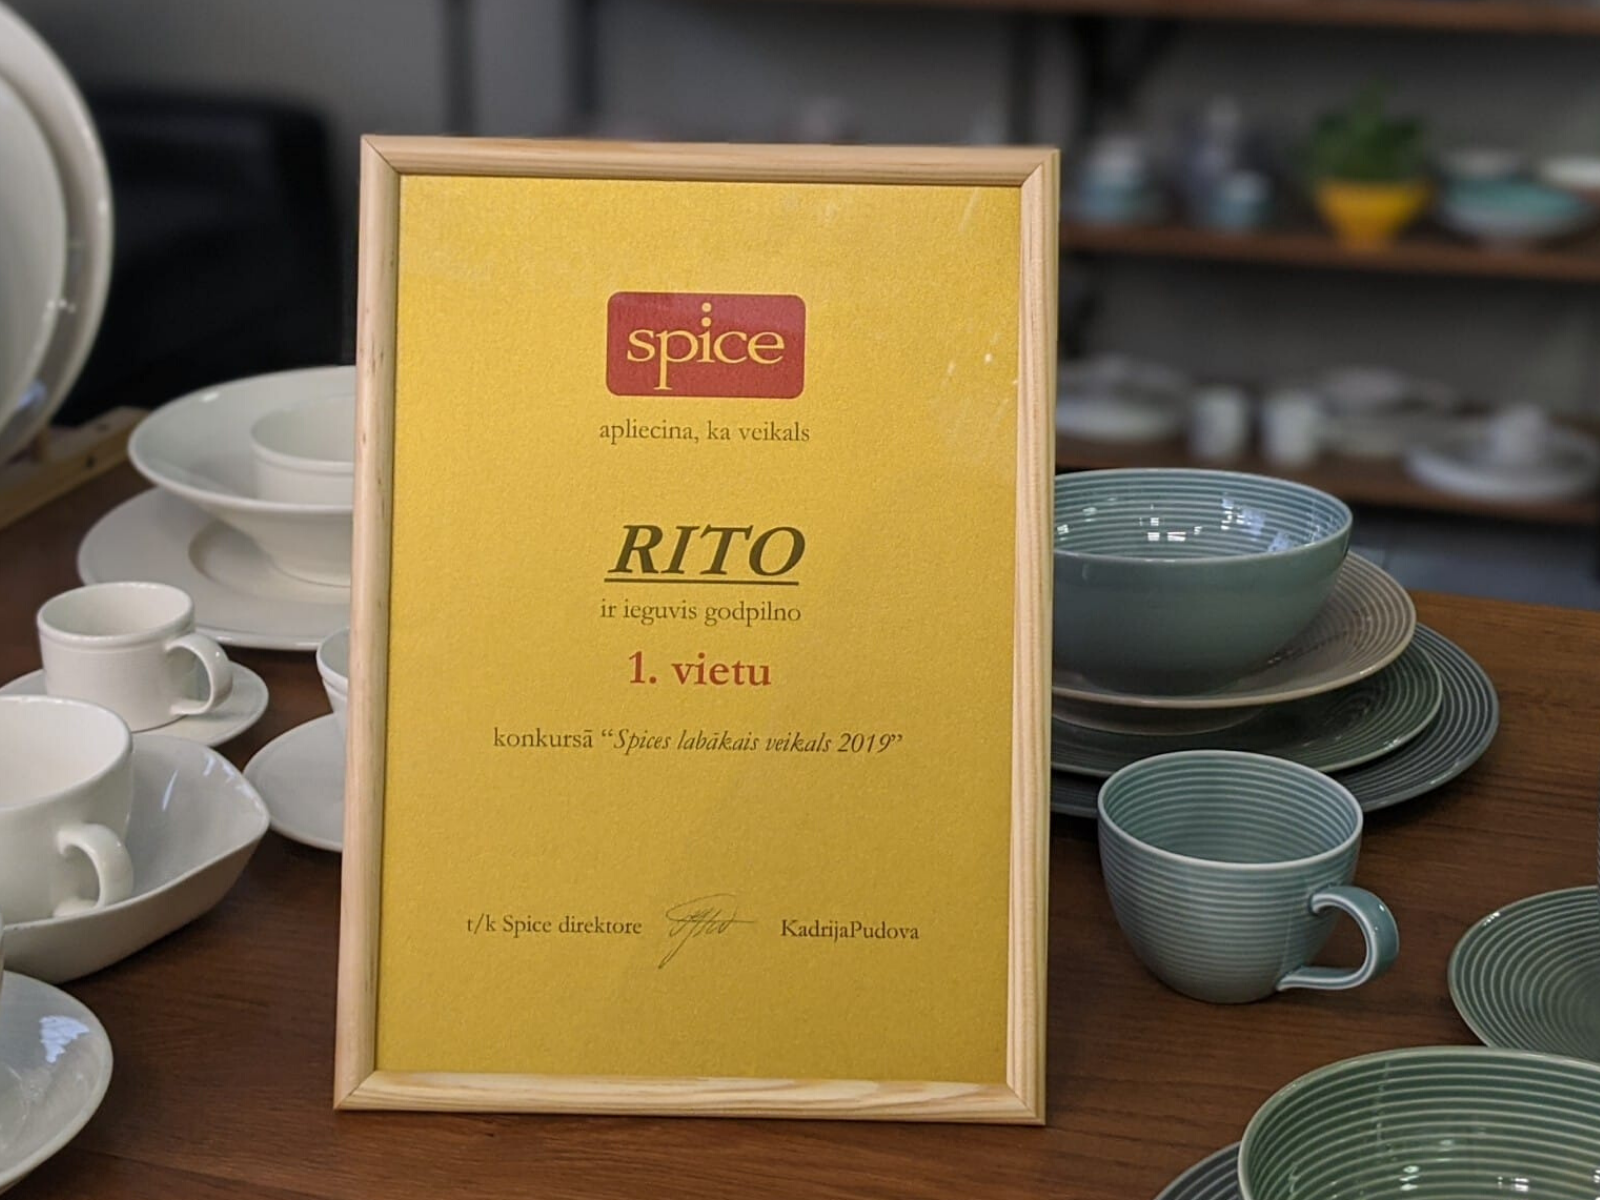 RITO iegūst 1. vietu konkursā "Spice Home labākais veikals 2019"